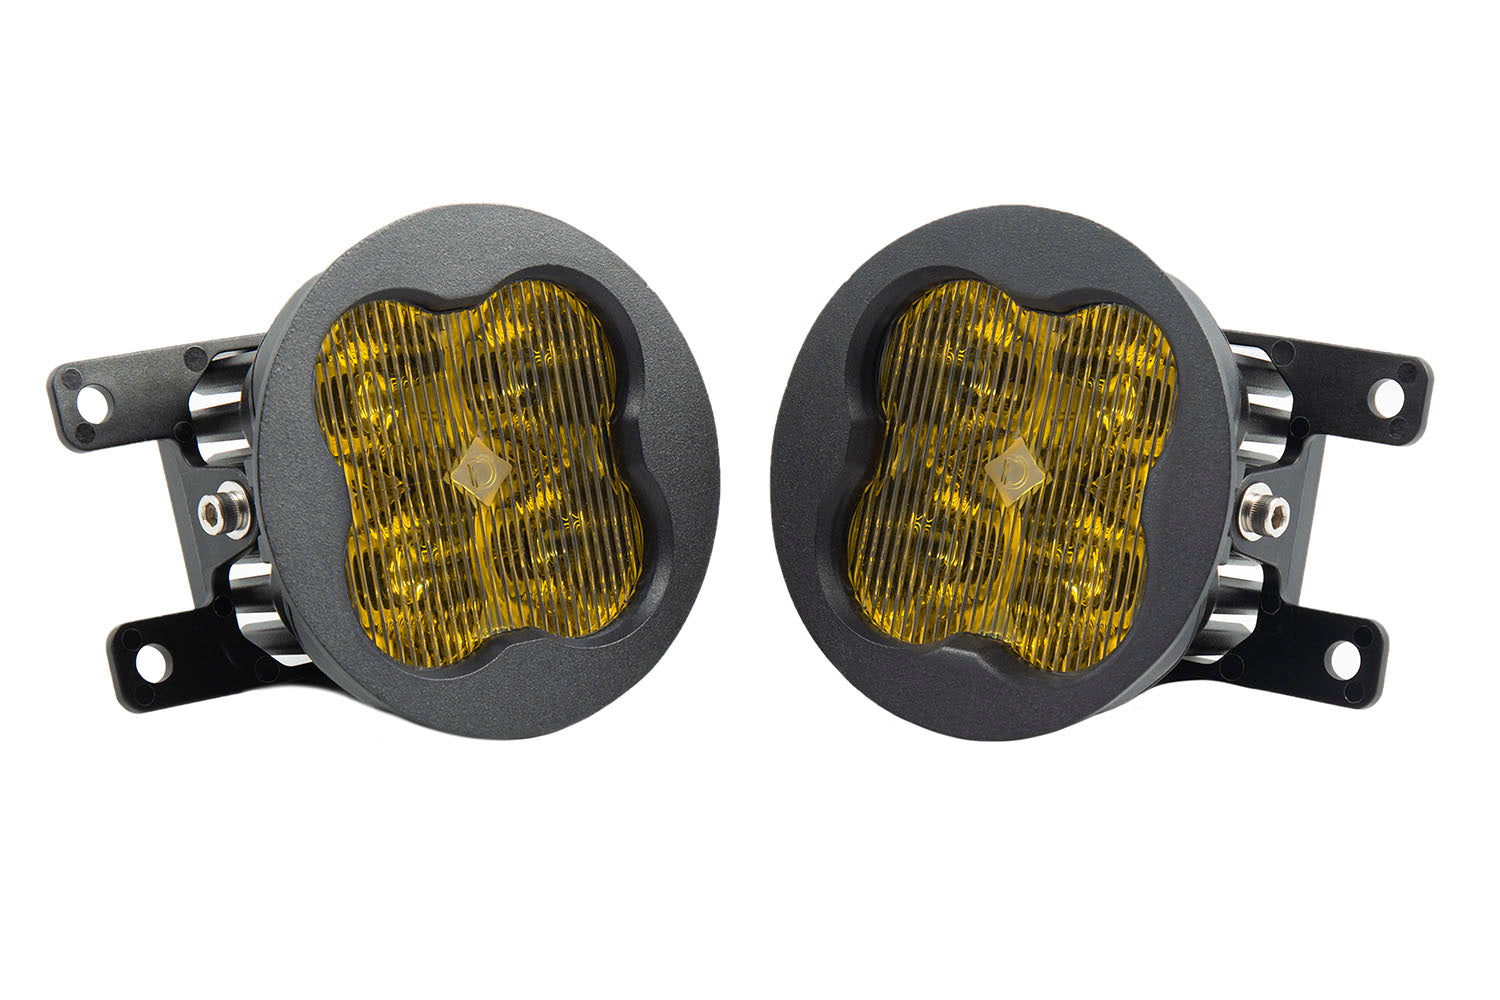 SS3 LED Fog Light Kit for 2012-2016 Fiat 500 Yellow SAE Fog Sport Diode Dynamics